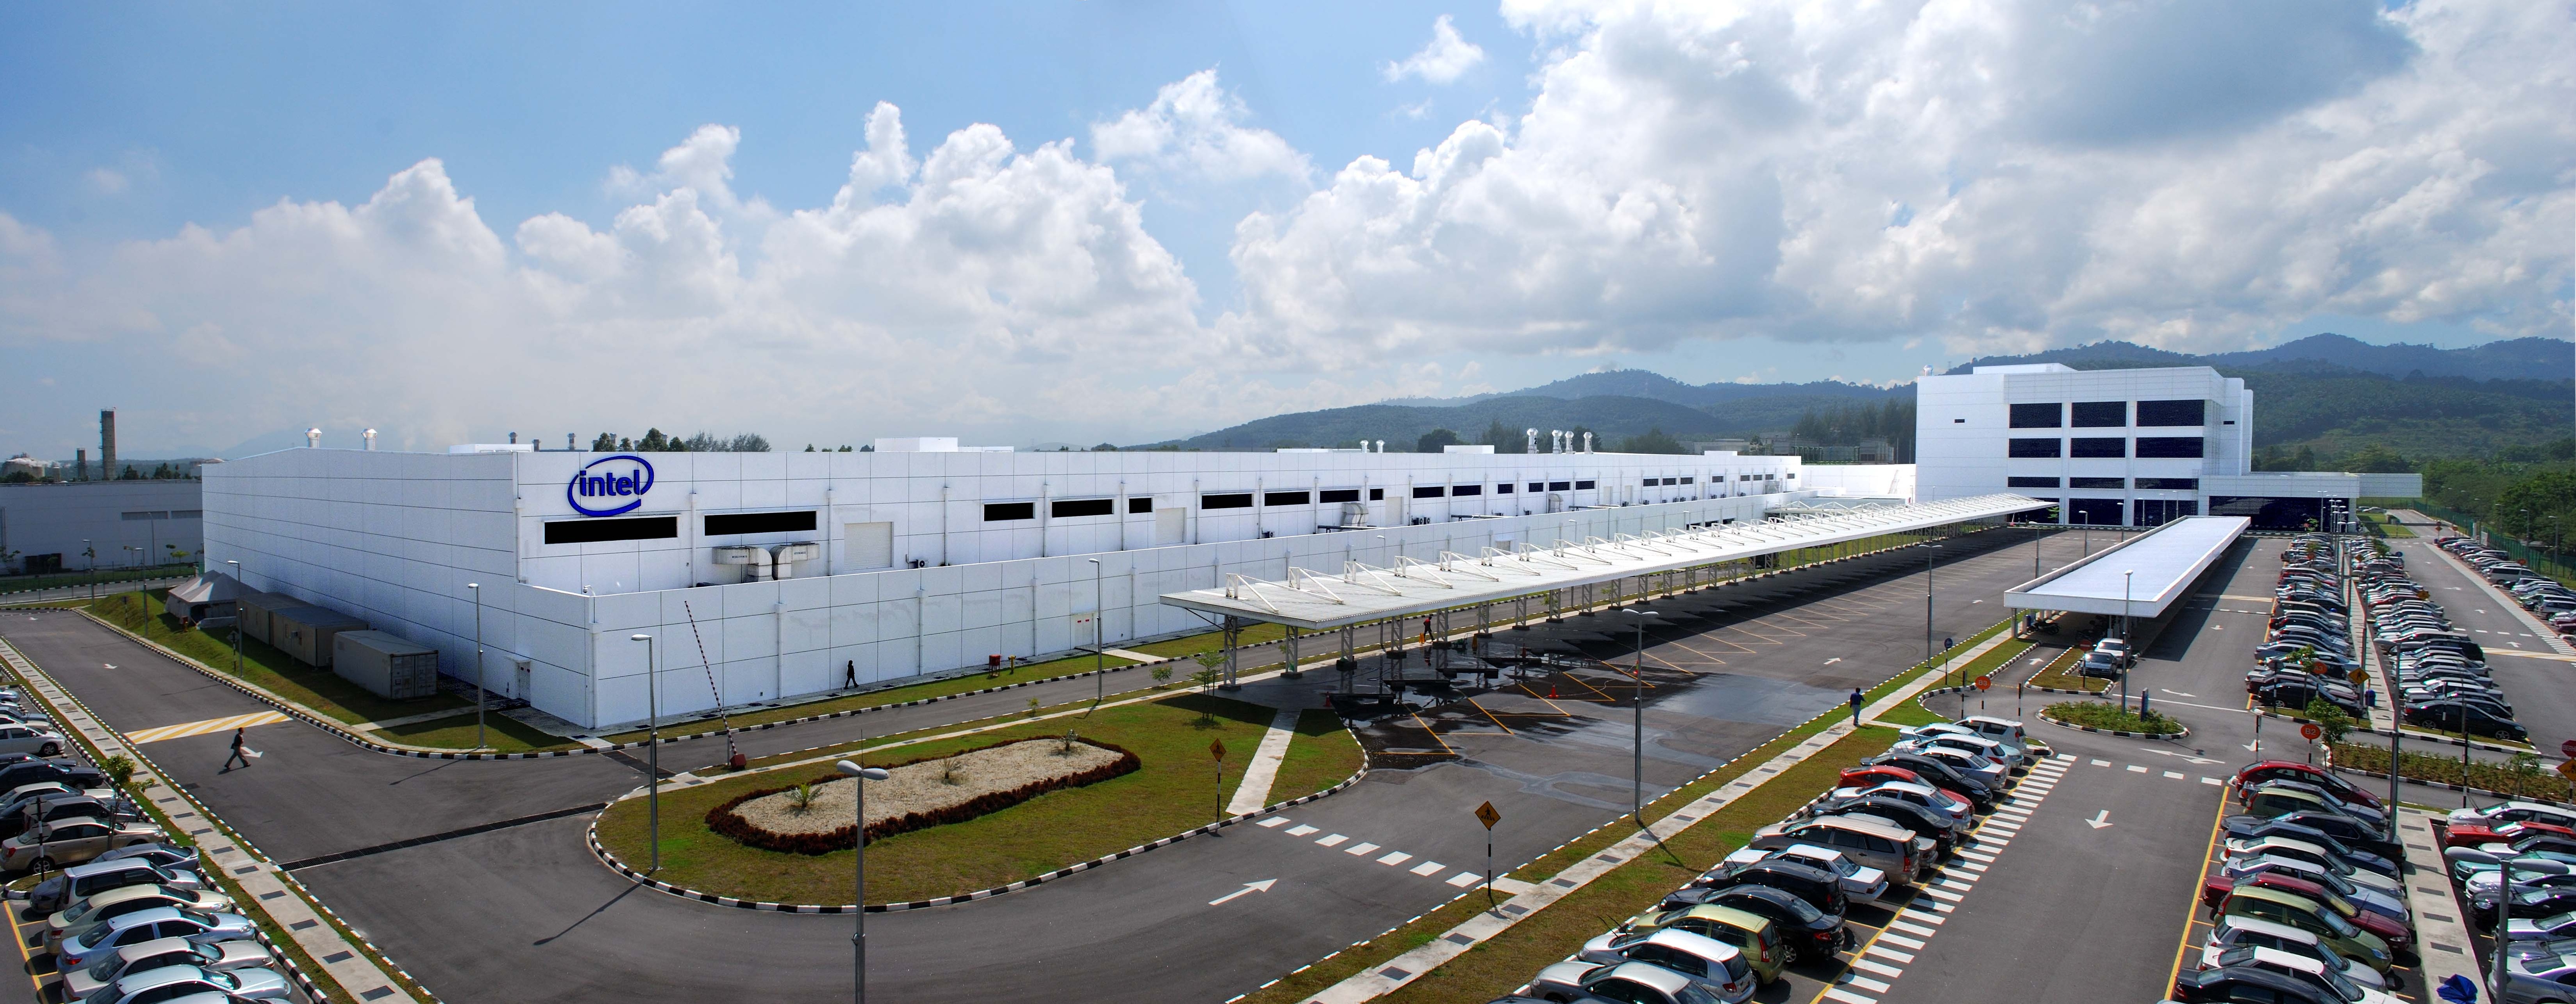 Intel costa rica. Коста Рика завод Интел. Завод Intel в Коста Рике. Завод Интел в Ирландии. Малайзия завод.